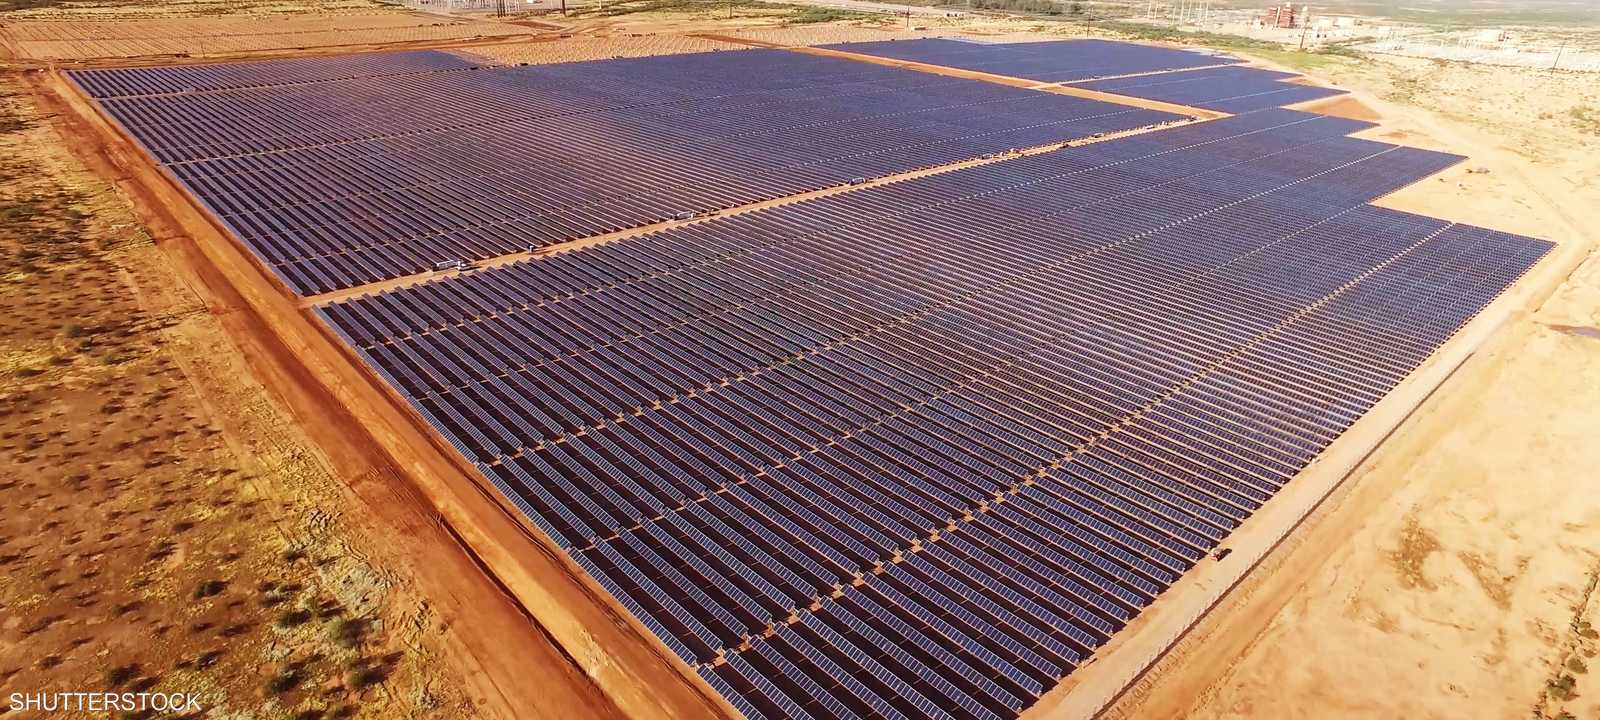 الطاقة الشمسية في المغرب